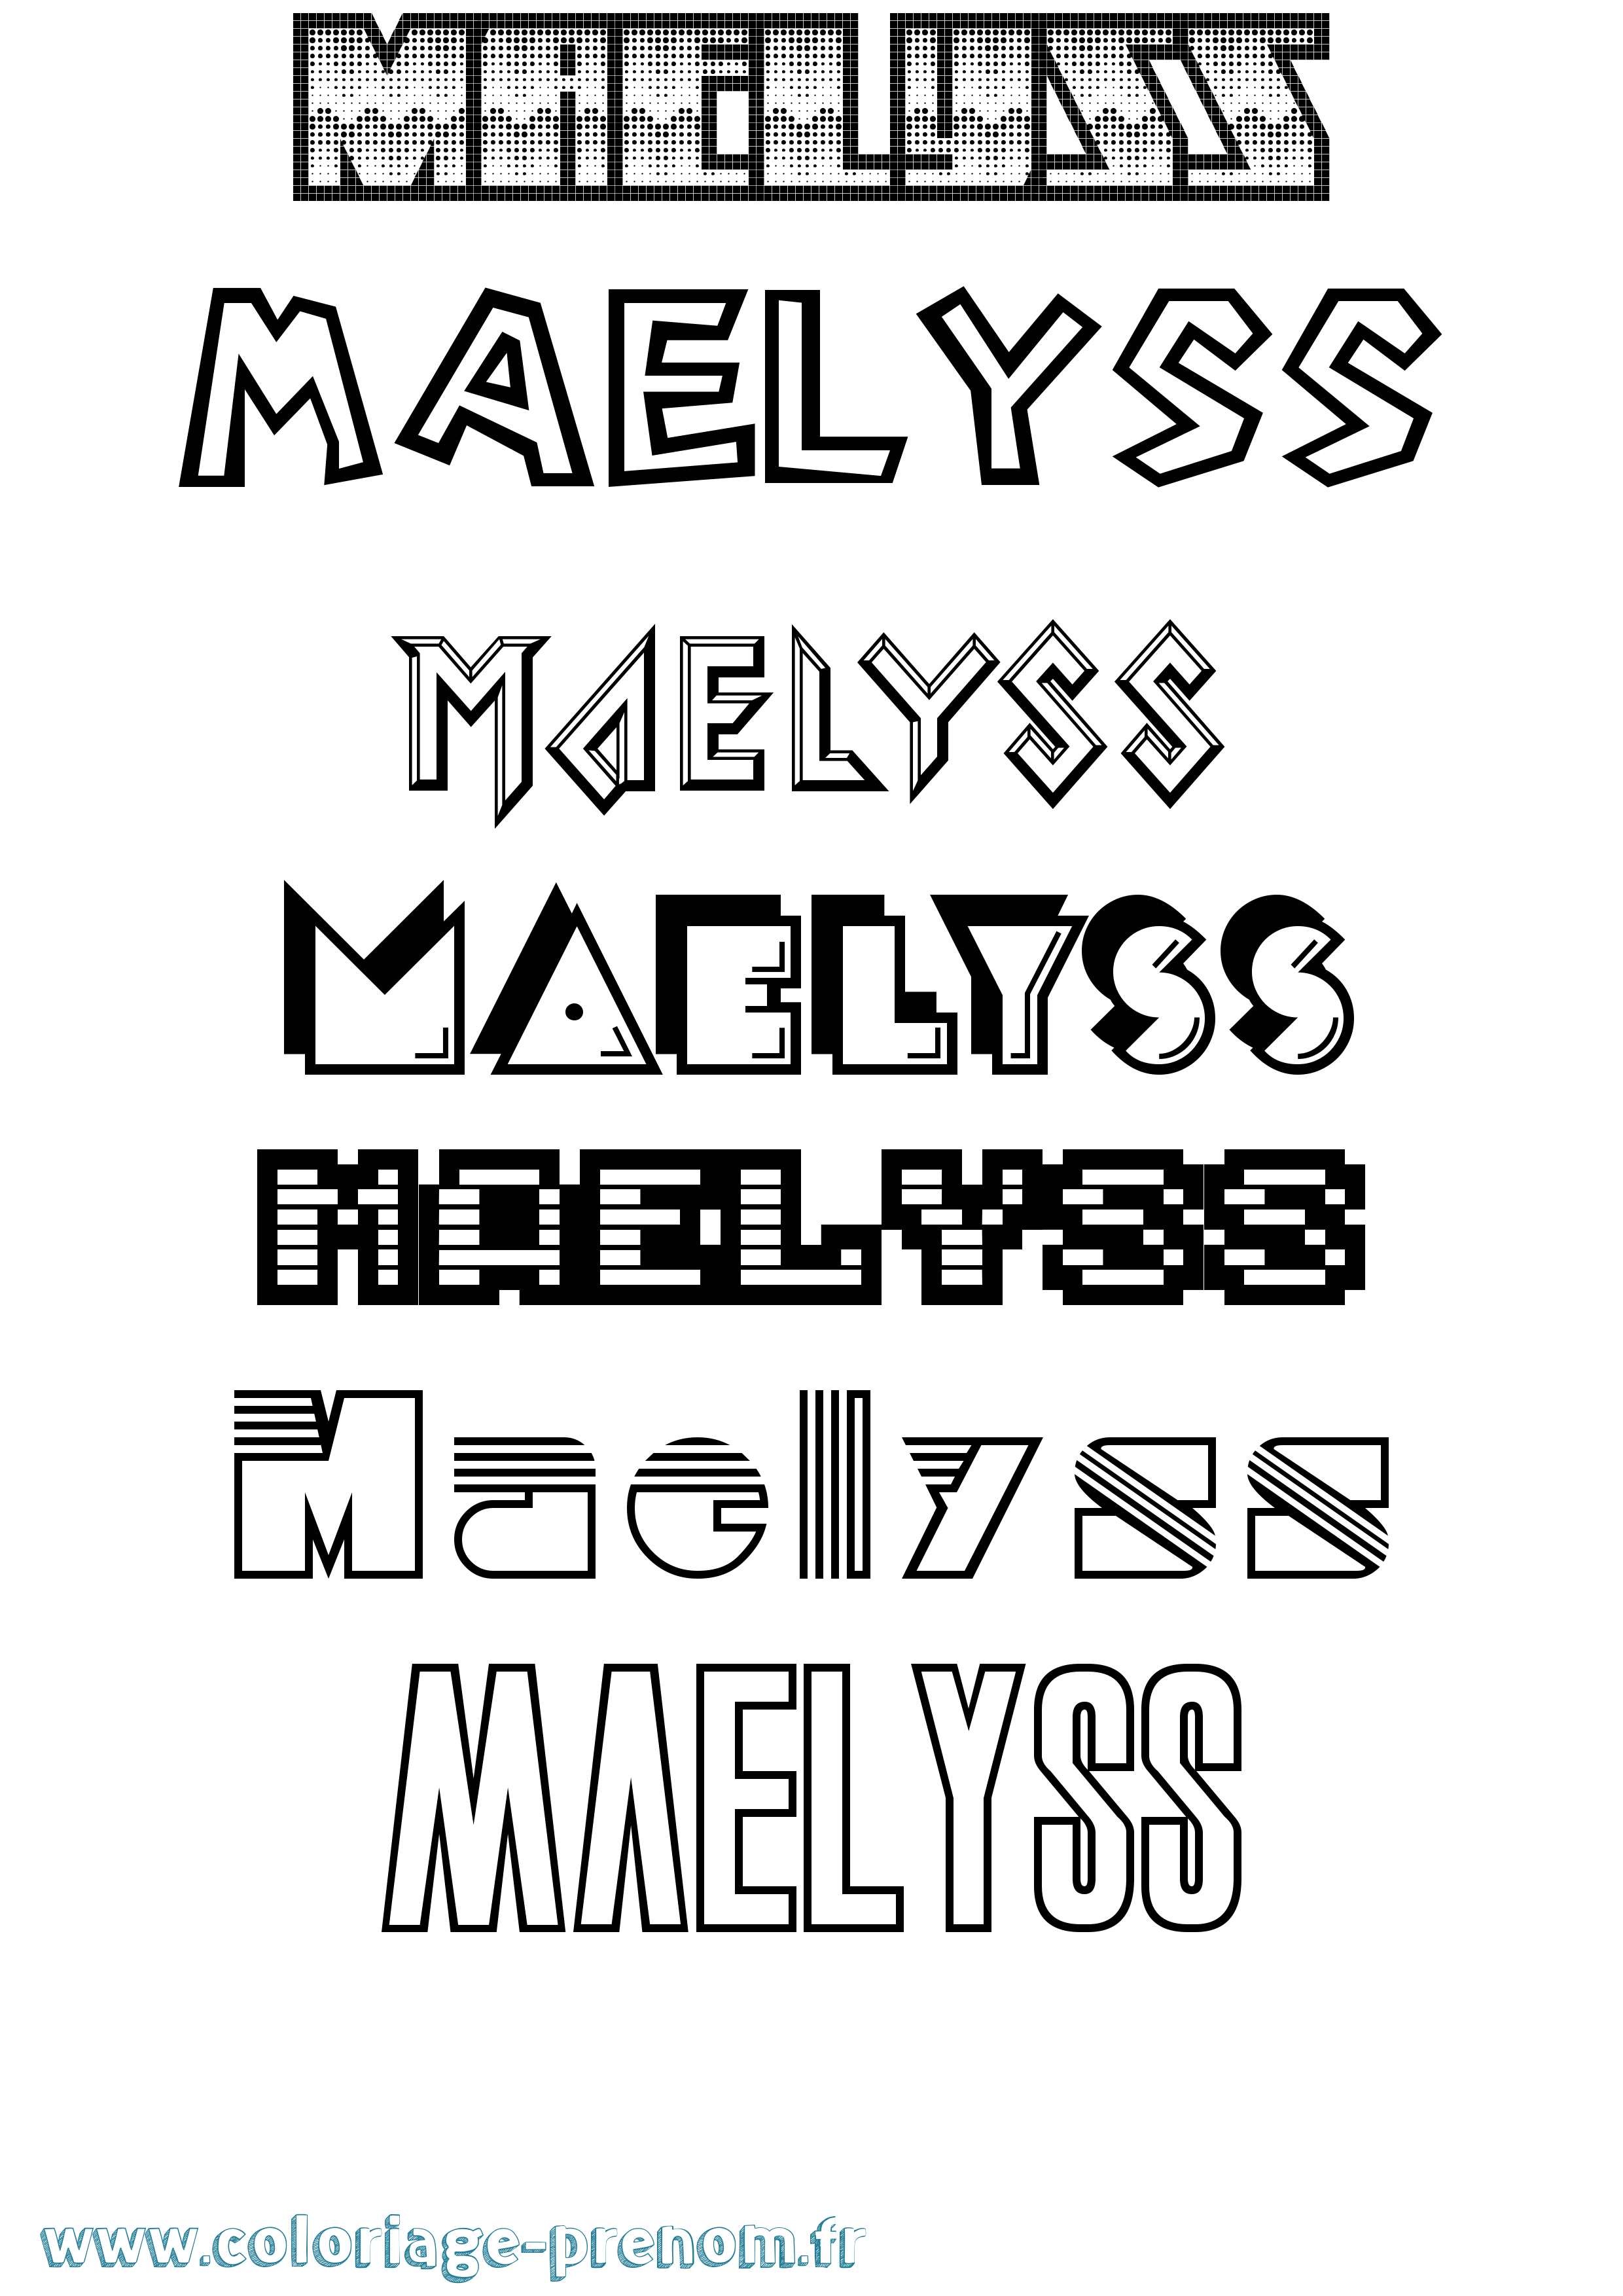 Coloriage prénom Maelyss Jeux Vidéos